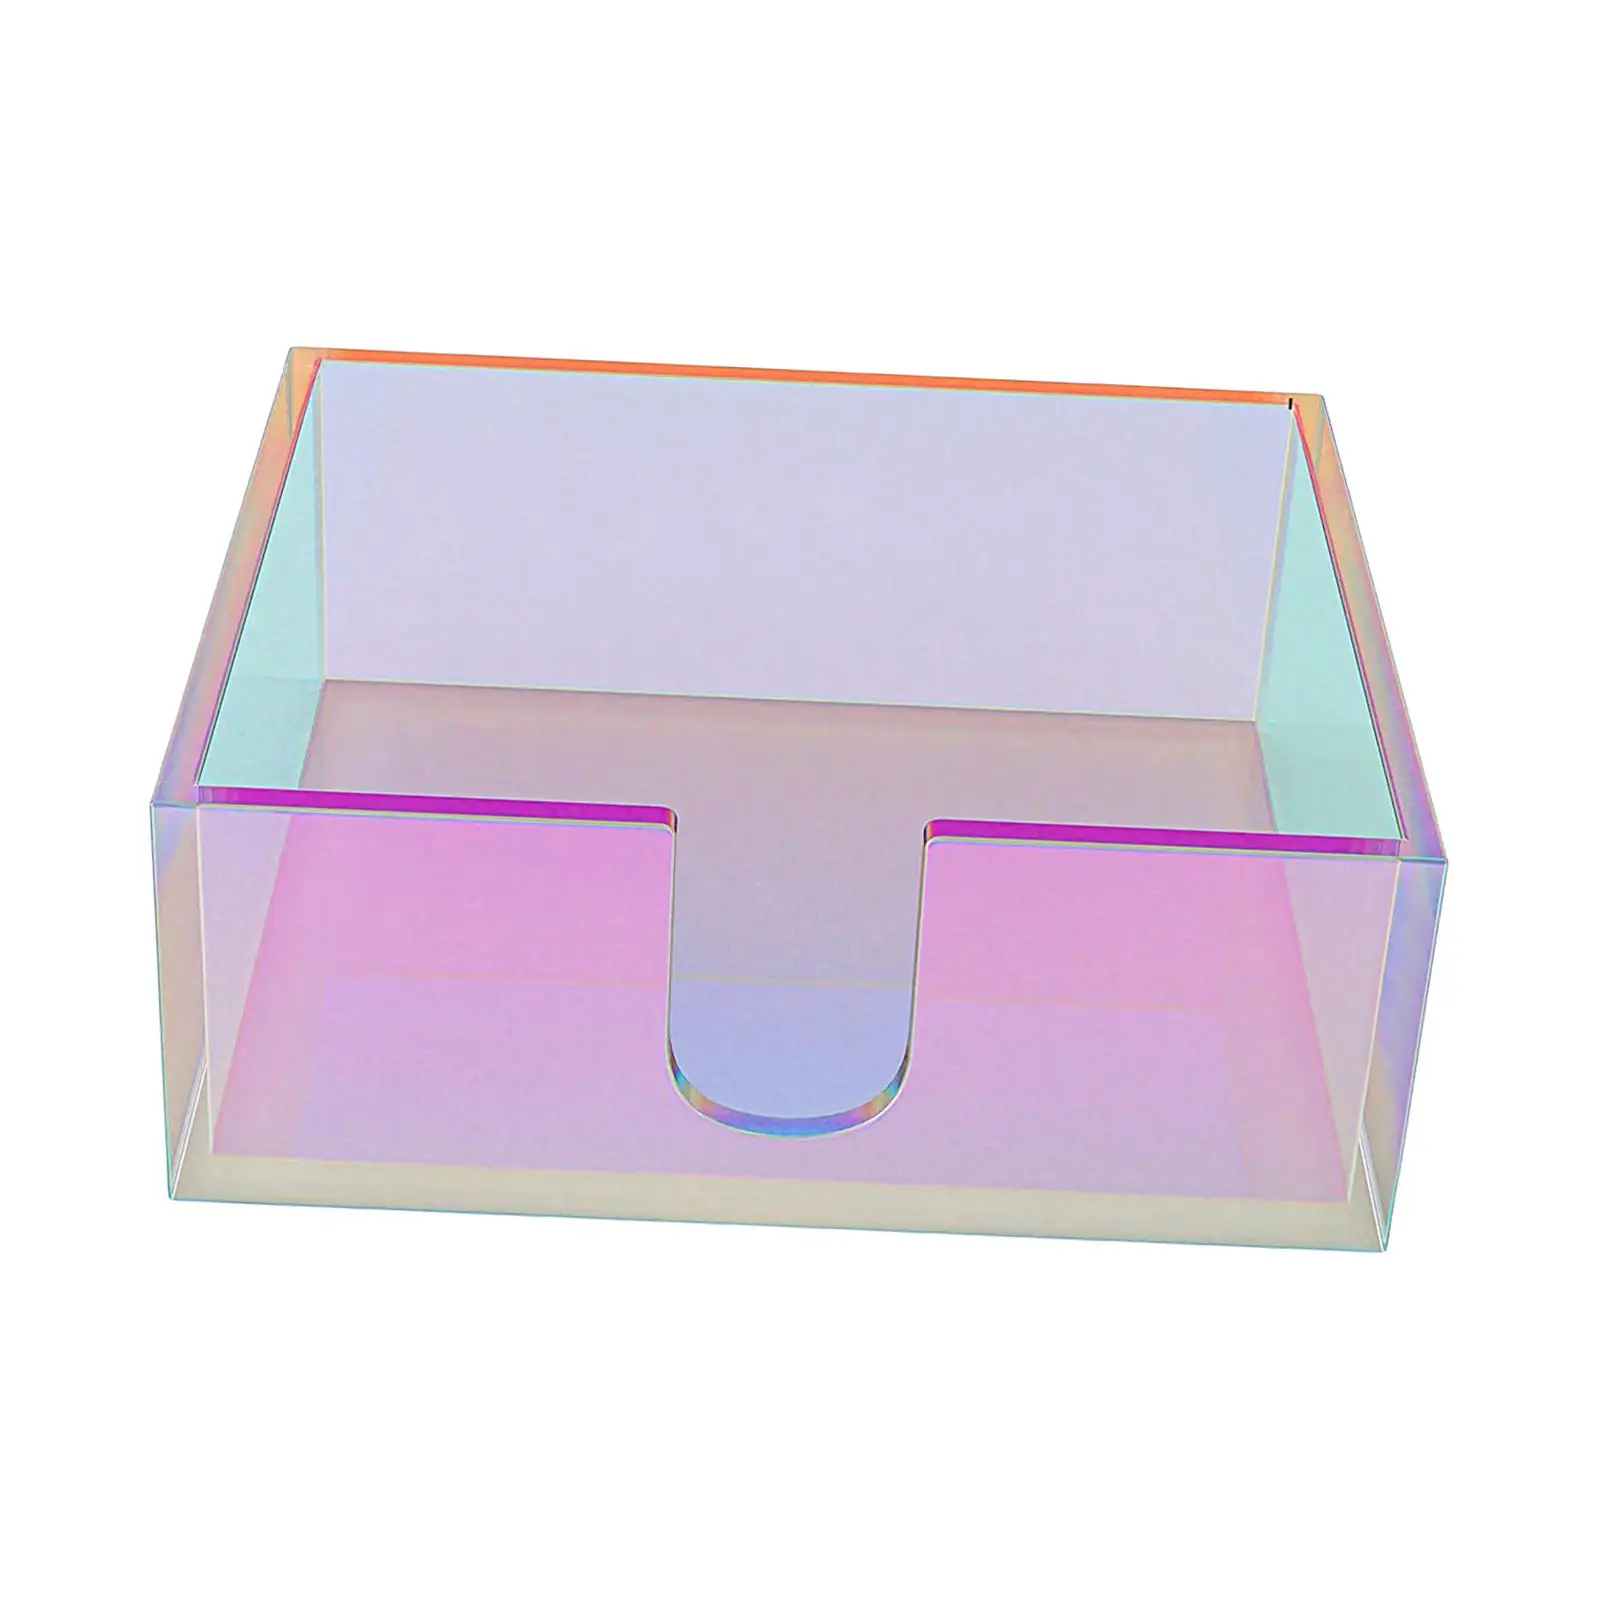 Napkin Holder Organizer Iridescent Tissue Box for Desktop Hotel Decorative Crafts